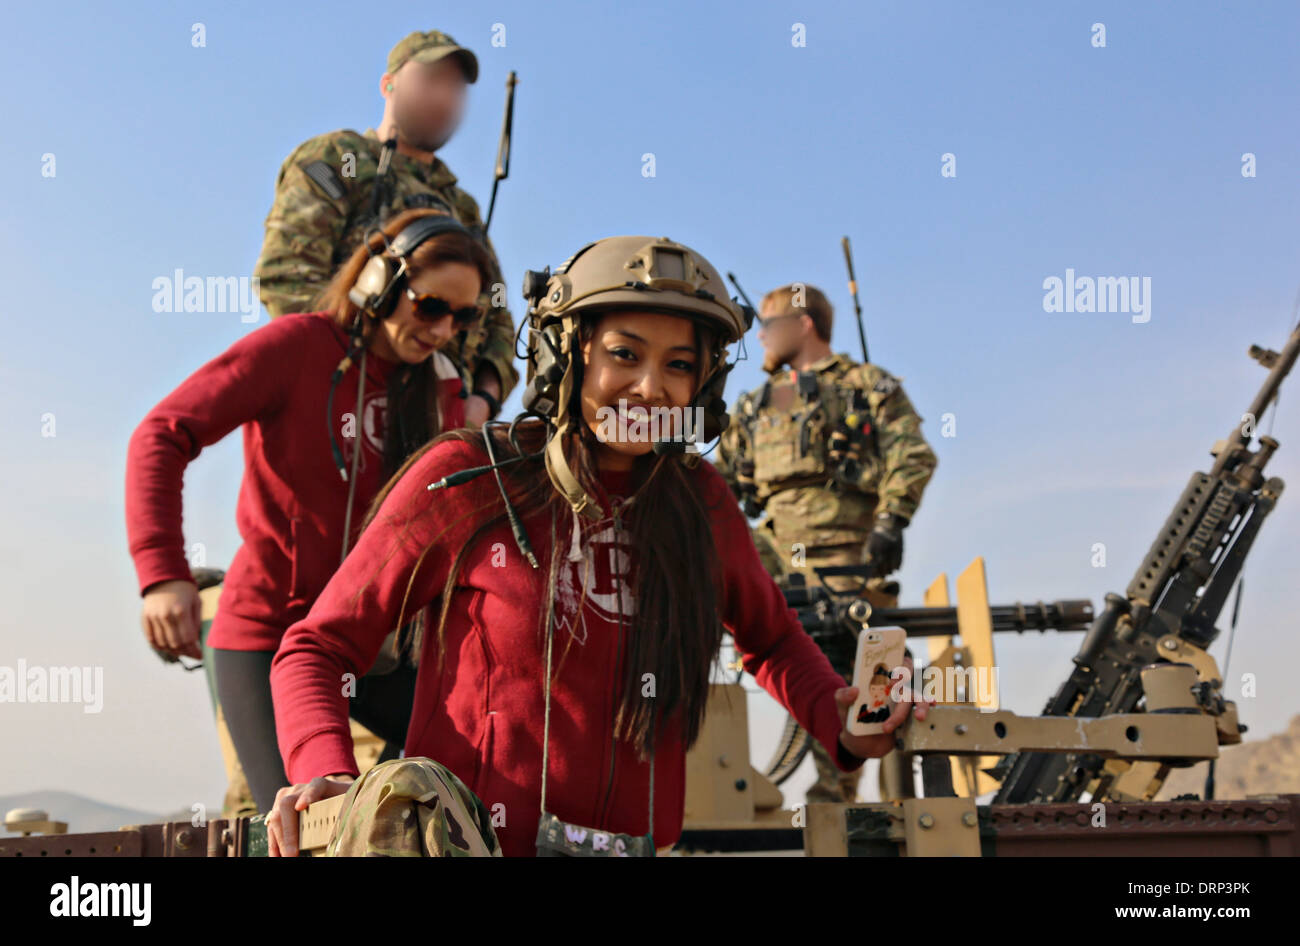 Washington Redskins Fußball Team Cheerleader Lächeln nach dem Brennen ein M240B Maschinengewehr während eines Besuchs zu uns Army Special Forces 24. Januar 2014 Soldaten in der Nähe von Kabul, Afghanistan. Teile des Bildes sind aus Sicherheitsgründen vom Militär fließend. Stockfoto